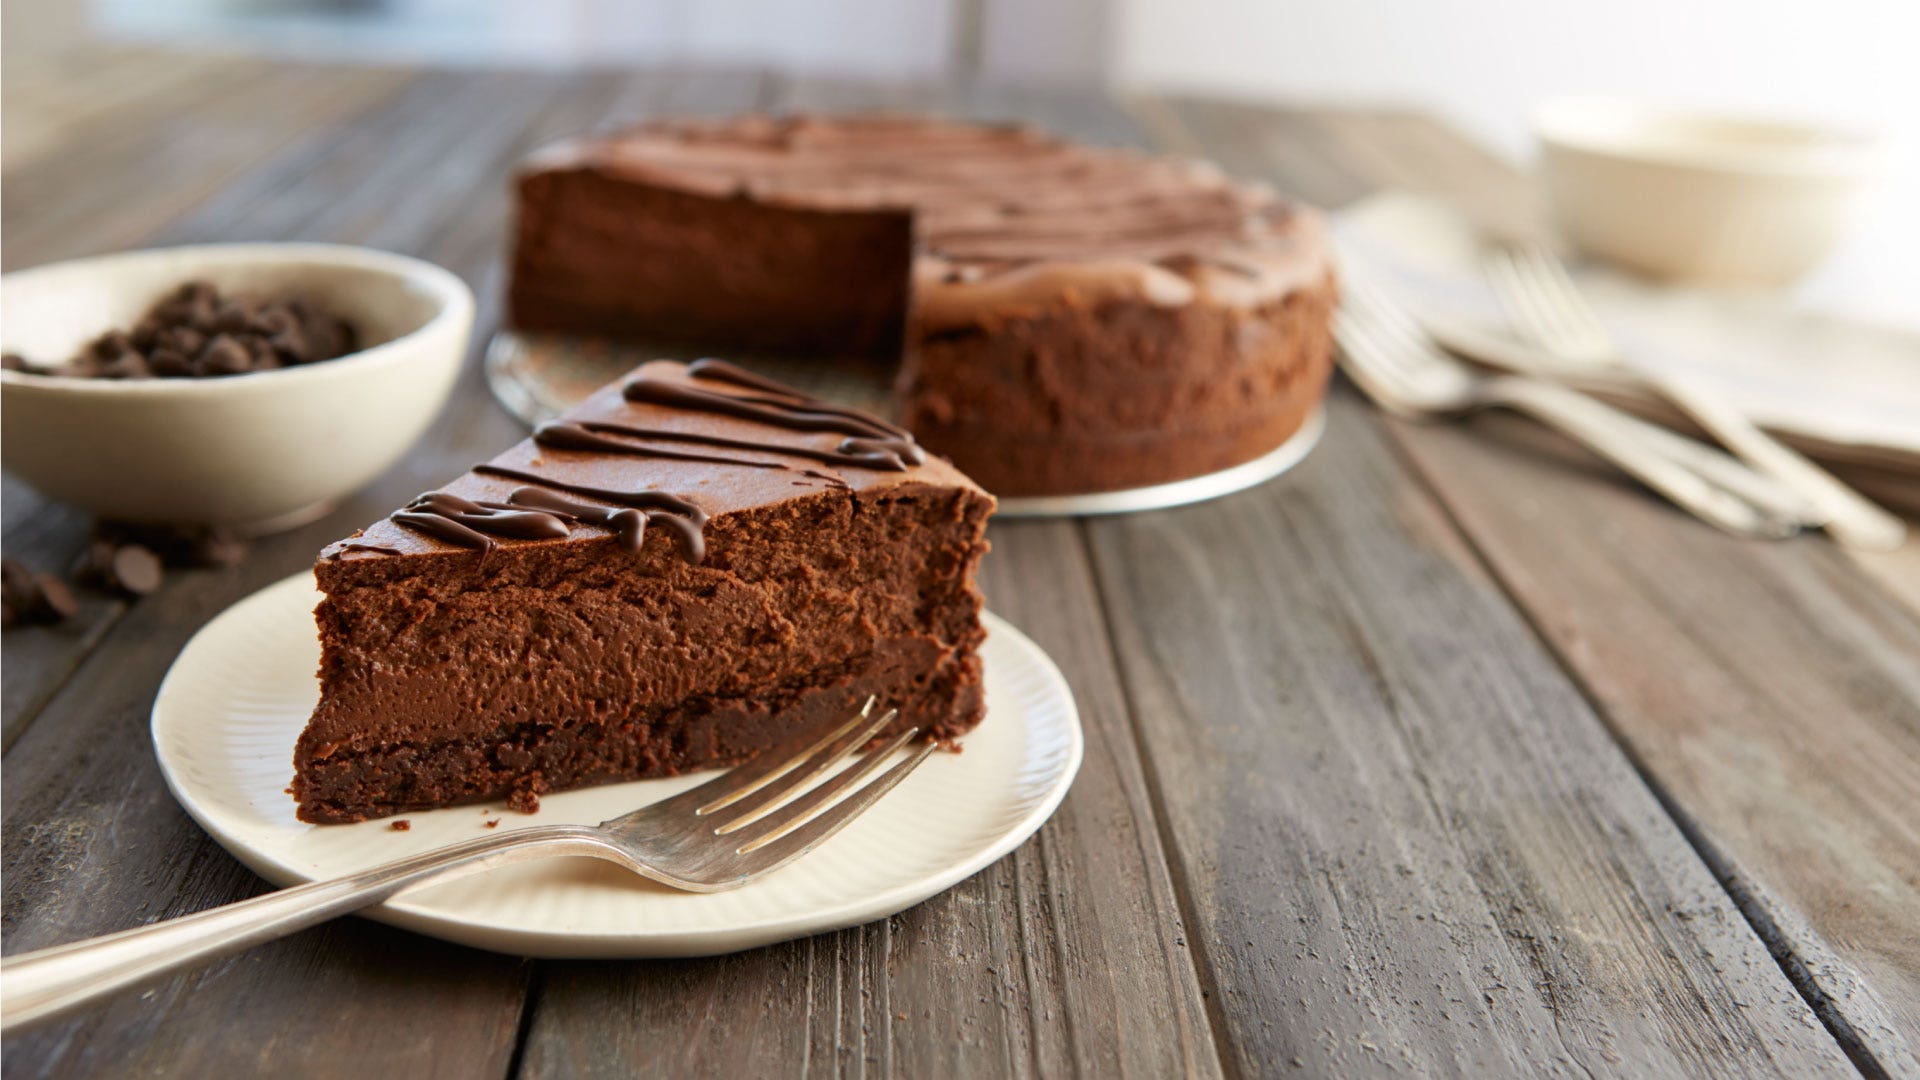 https://www.hersheyland.com/content/dam/hersheyland/en-us/recipes/recipe-images/376-hersheys-special-dark-chocolate-truffle-brownie-cheesecake.jpg